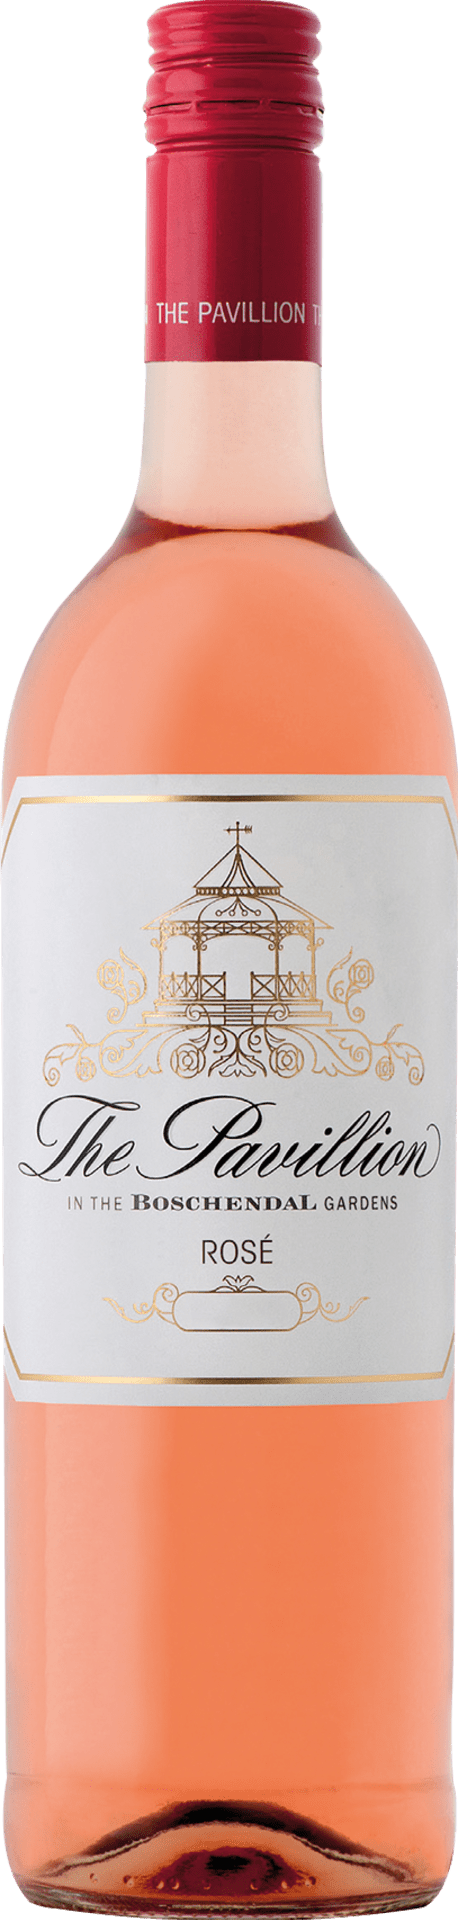 The Pavillion Rosé